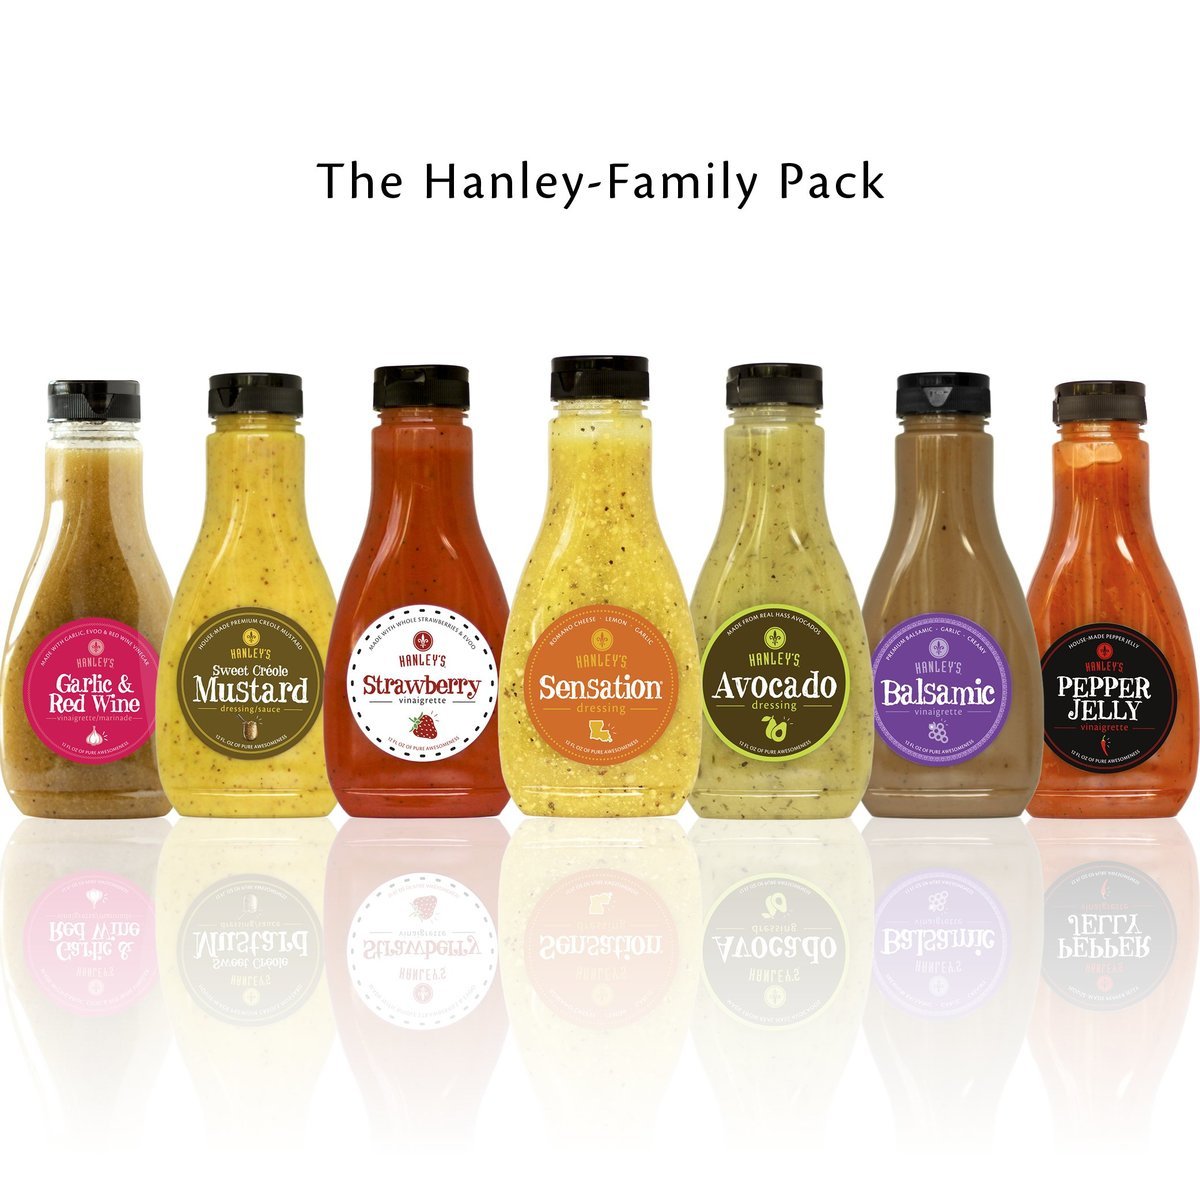 The Hanley-Family Pack